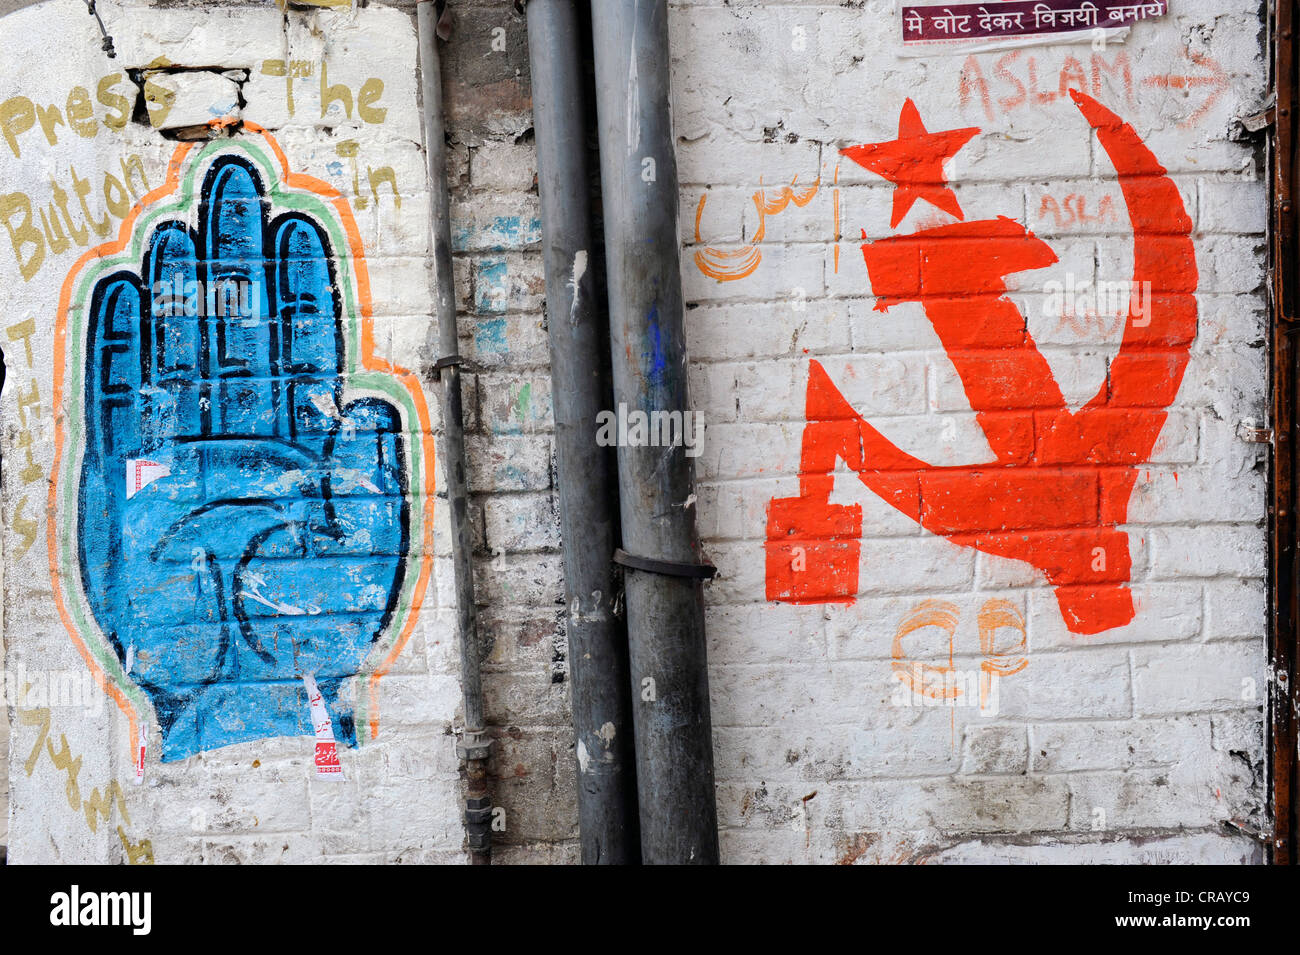 Symboles de l'Indian Congress Party et le Parti communiste peint sur un mur, quartier Shibpur, Howrah, Kolkata, West Bengal Banque D'Images